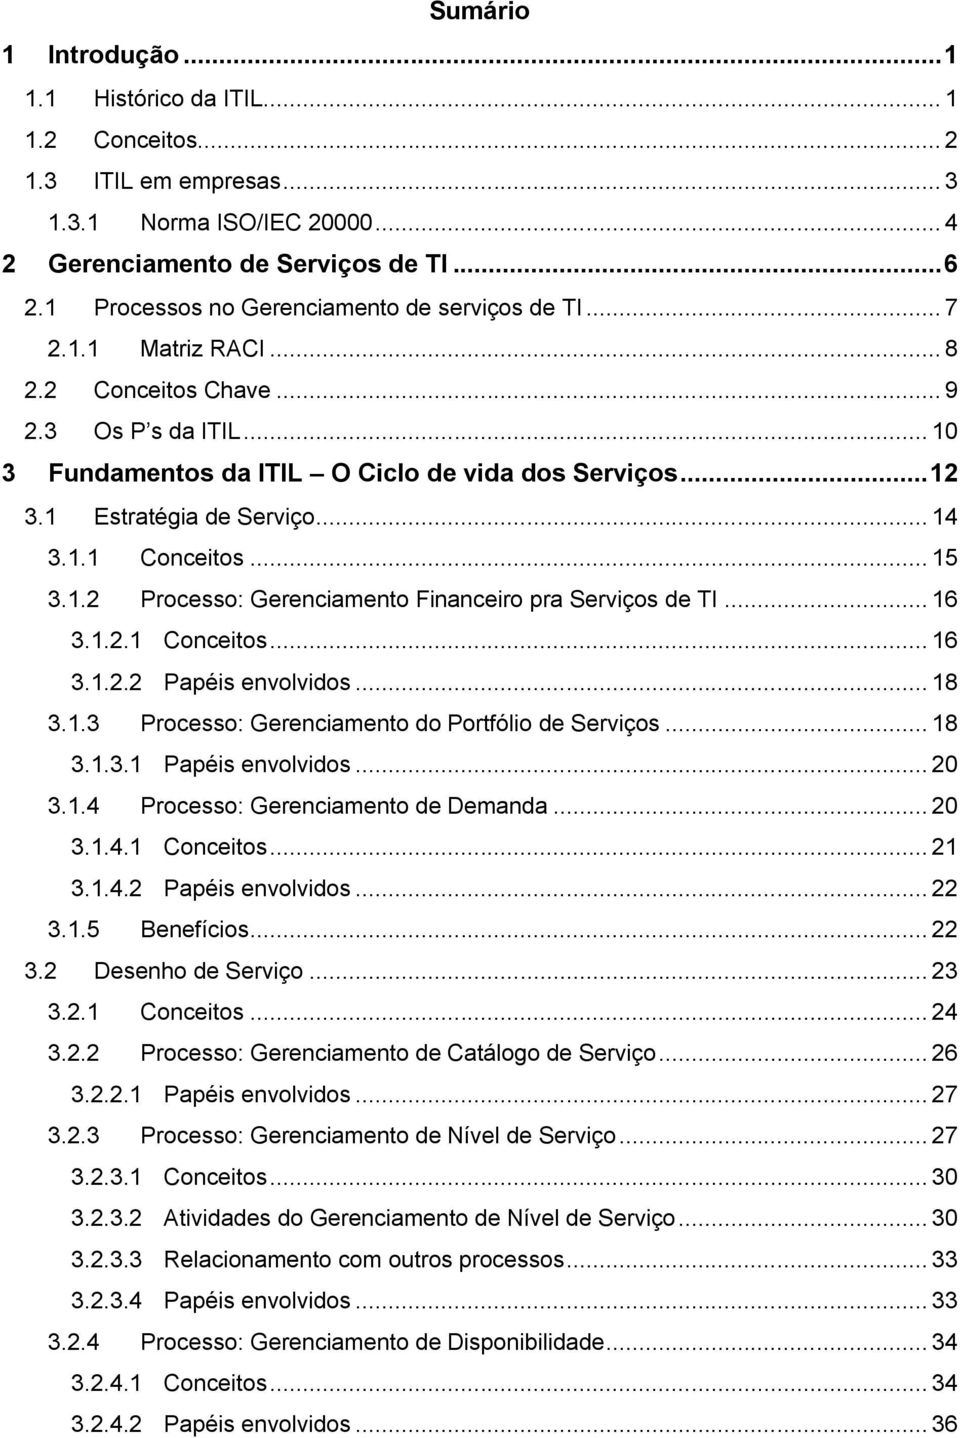 1 Estratégia de Serviço... 14 3.1.1 Conceitos... 15 3.1.2 Processo: Gerenciamento Financeiro pra Serviços de TI... 16 3.1.2.1 Conceitos... 16 3.1.2.2 Papéis envolvidos... 18 3.1.3 Processo: Gerenciamento do Portfólio de Serviços.